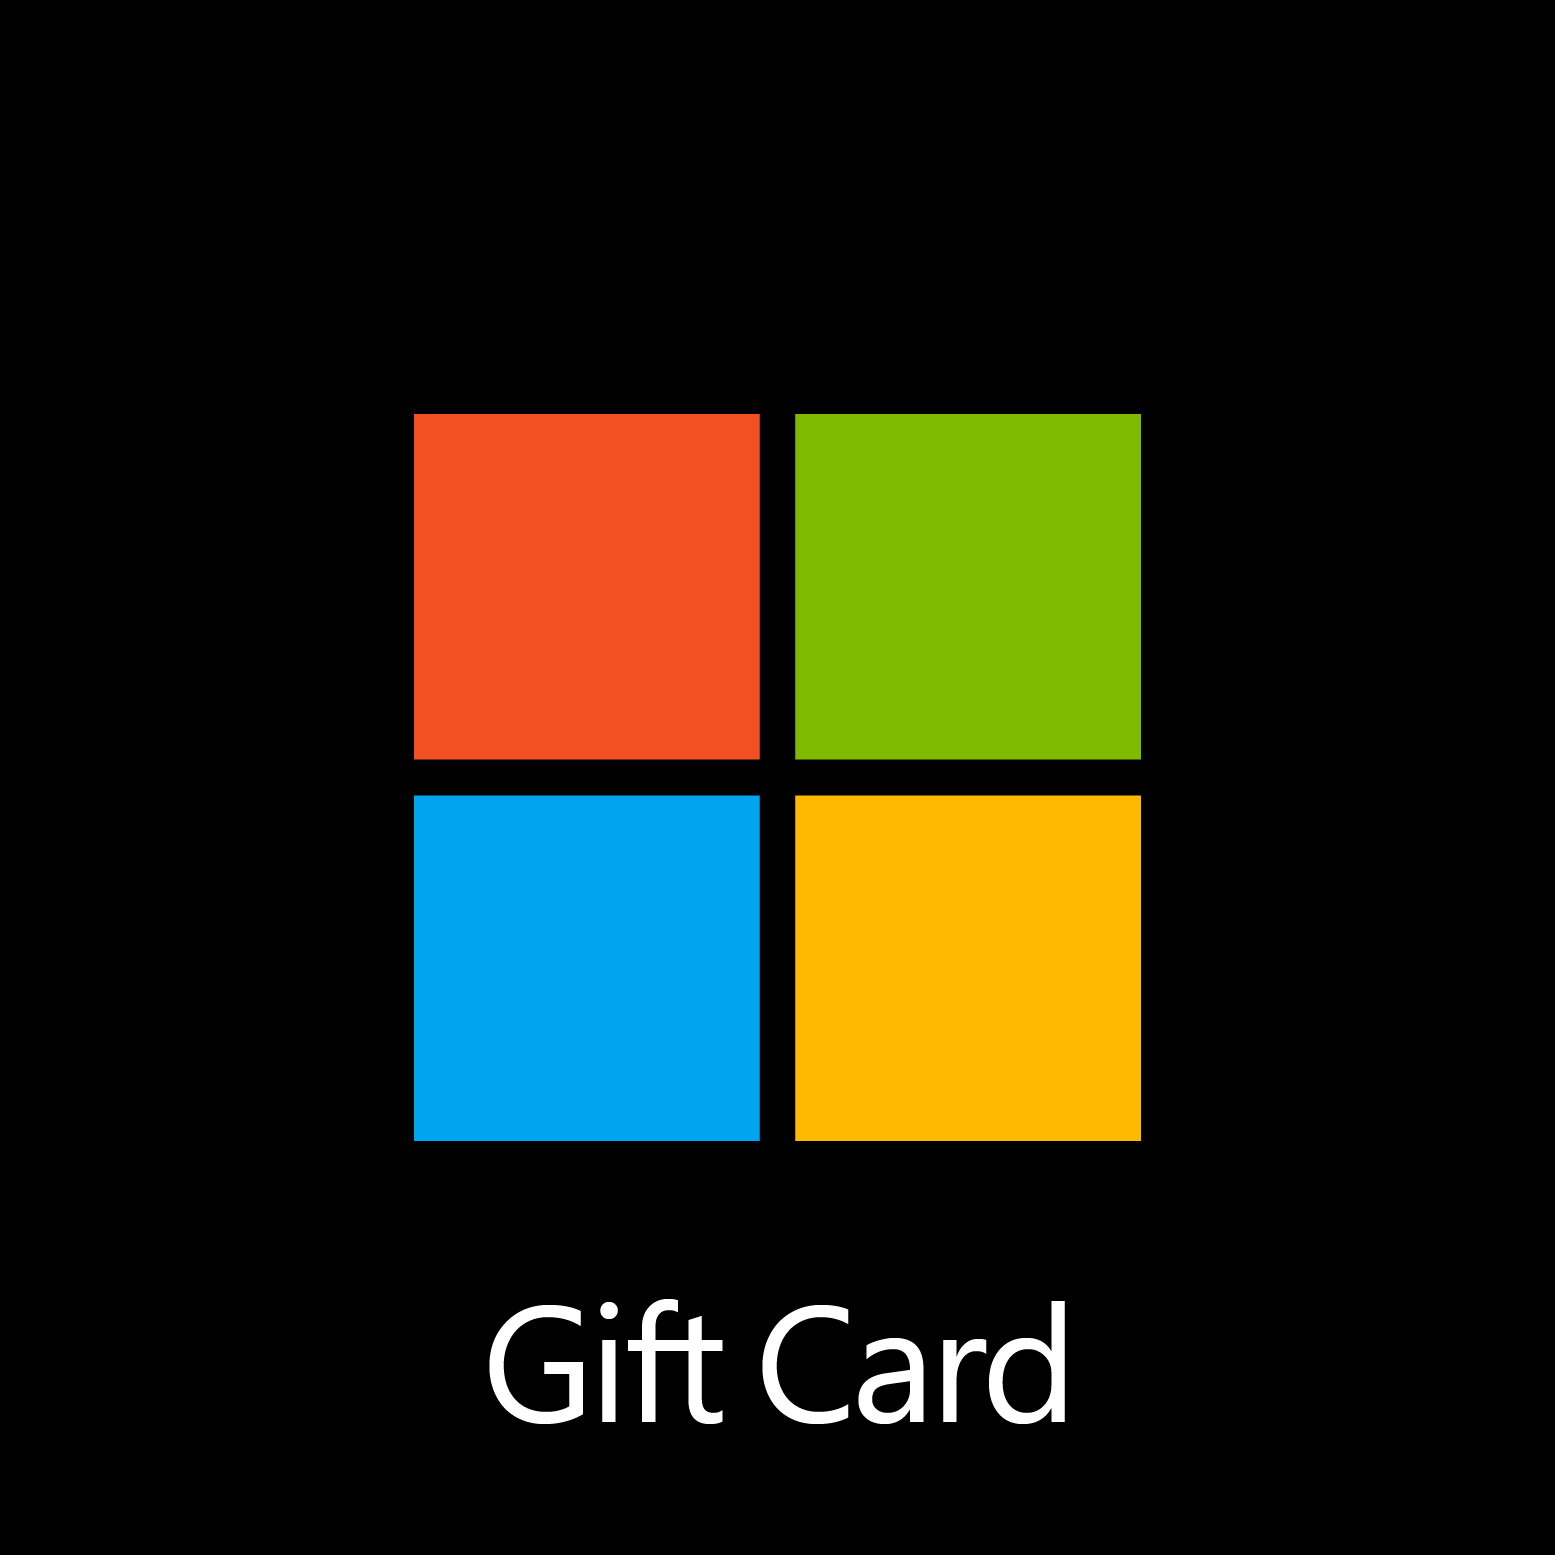 Microsoft Gift Card - Digital Code: £40.00